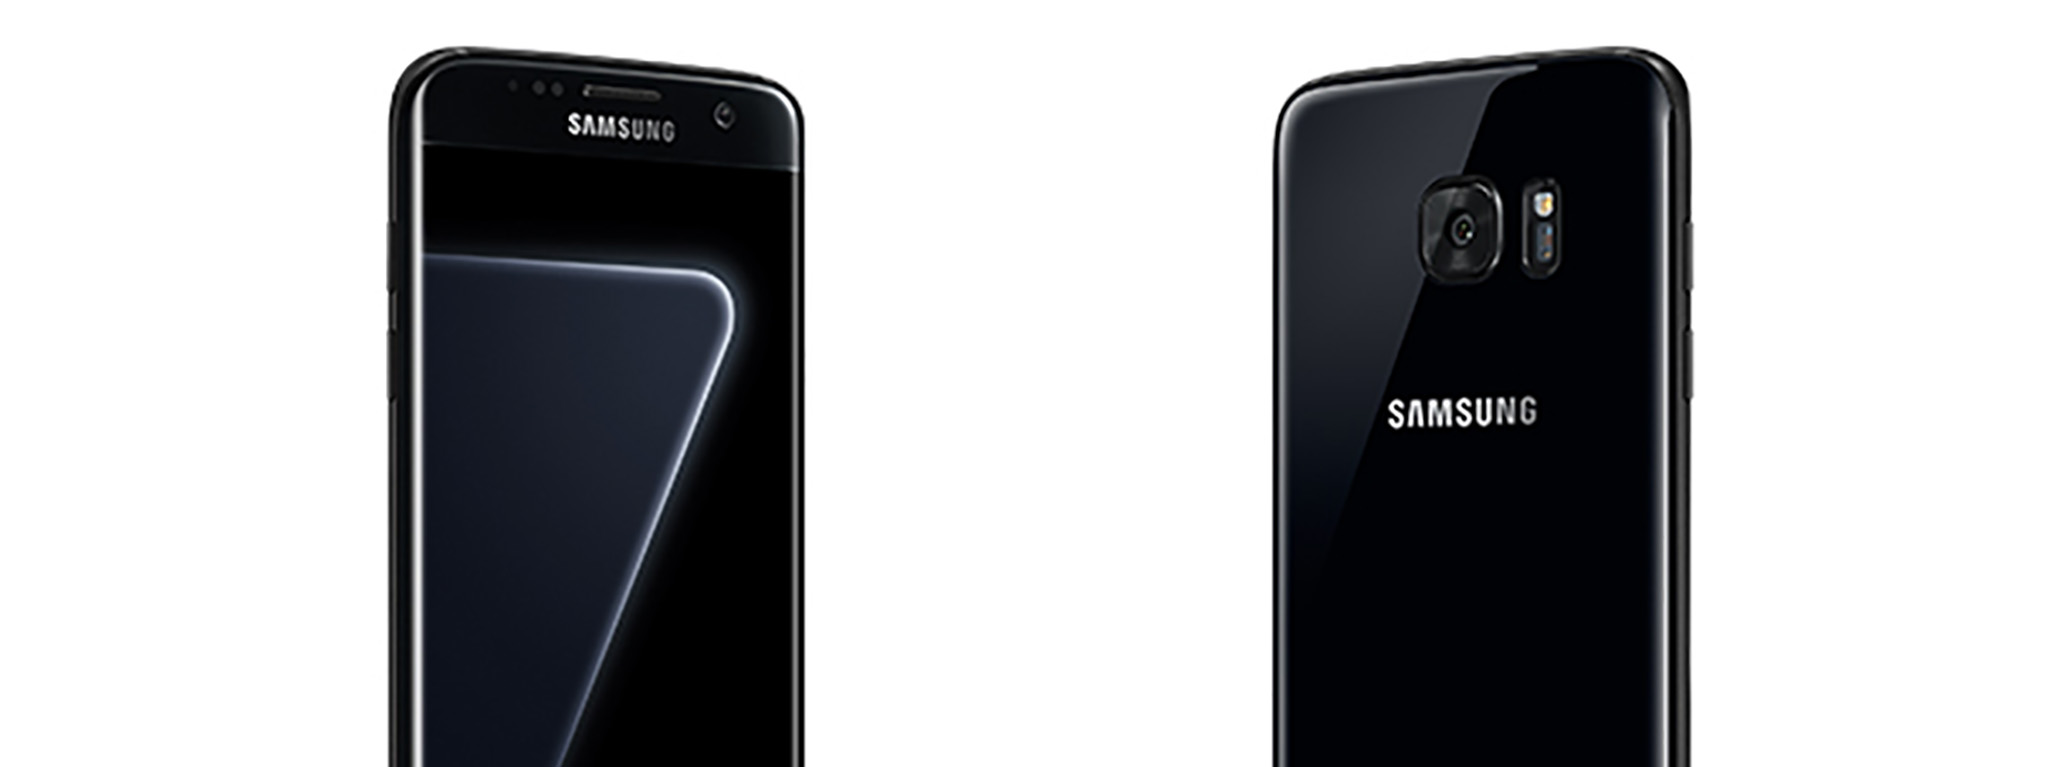 Samsung Galaxy S7 edge có thêm màu đen ngọc "Pearl Black", 128GB bộ nhớ trong